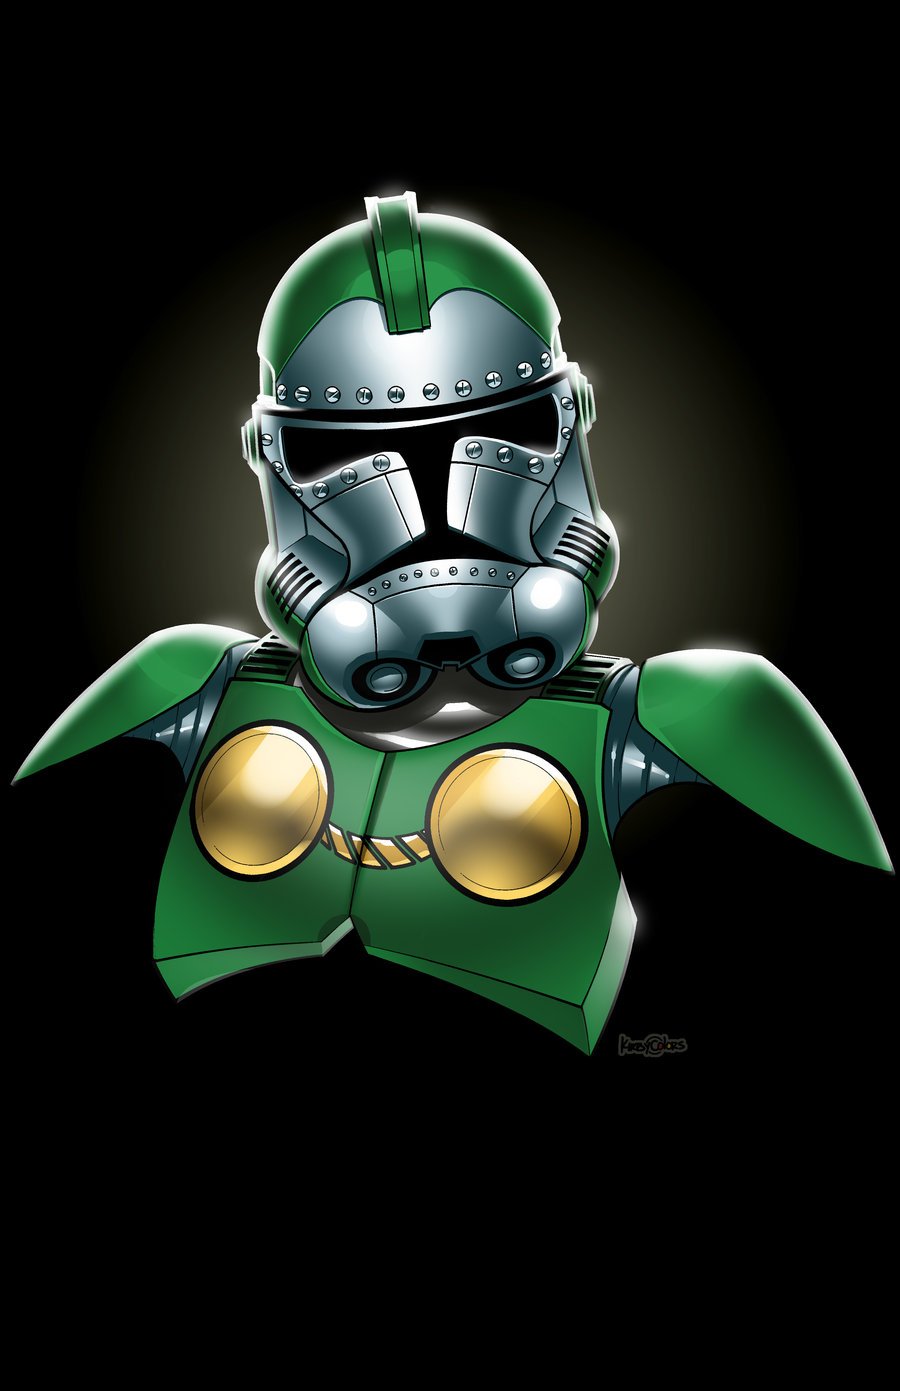 doom-super-herois-uniforme-Stormtroopers